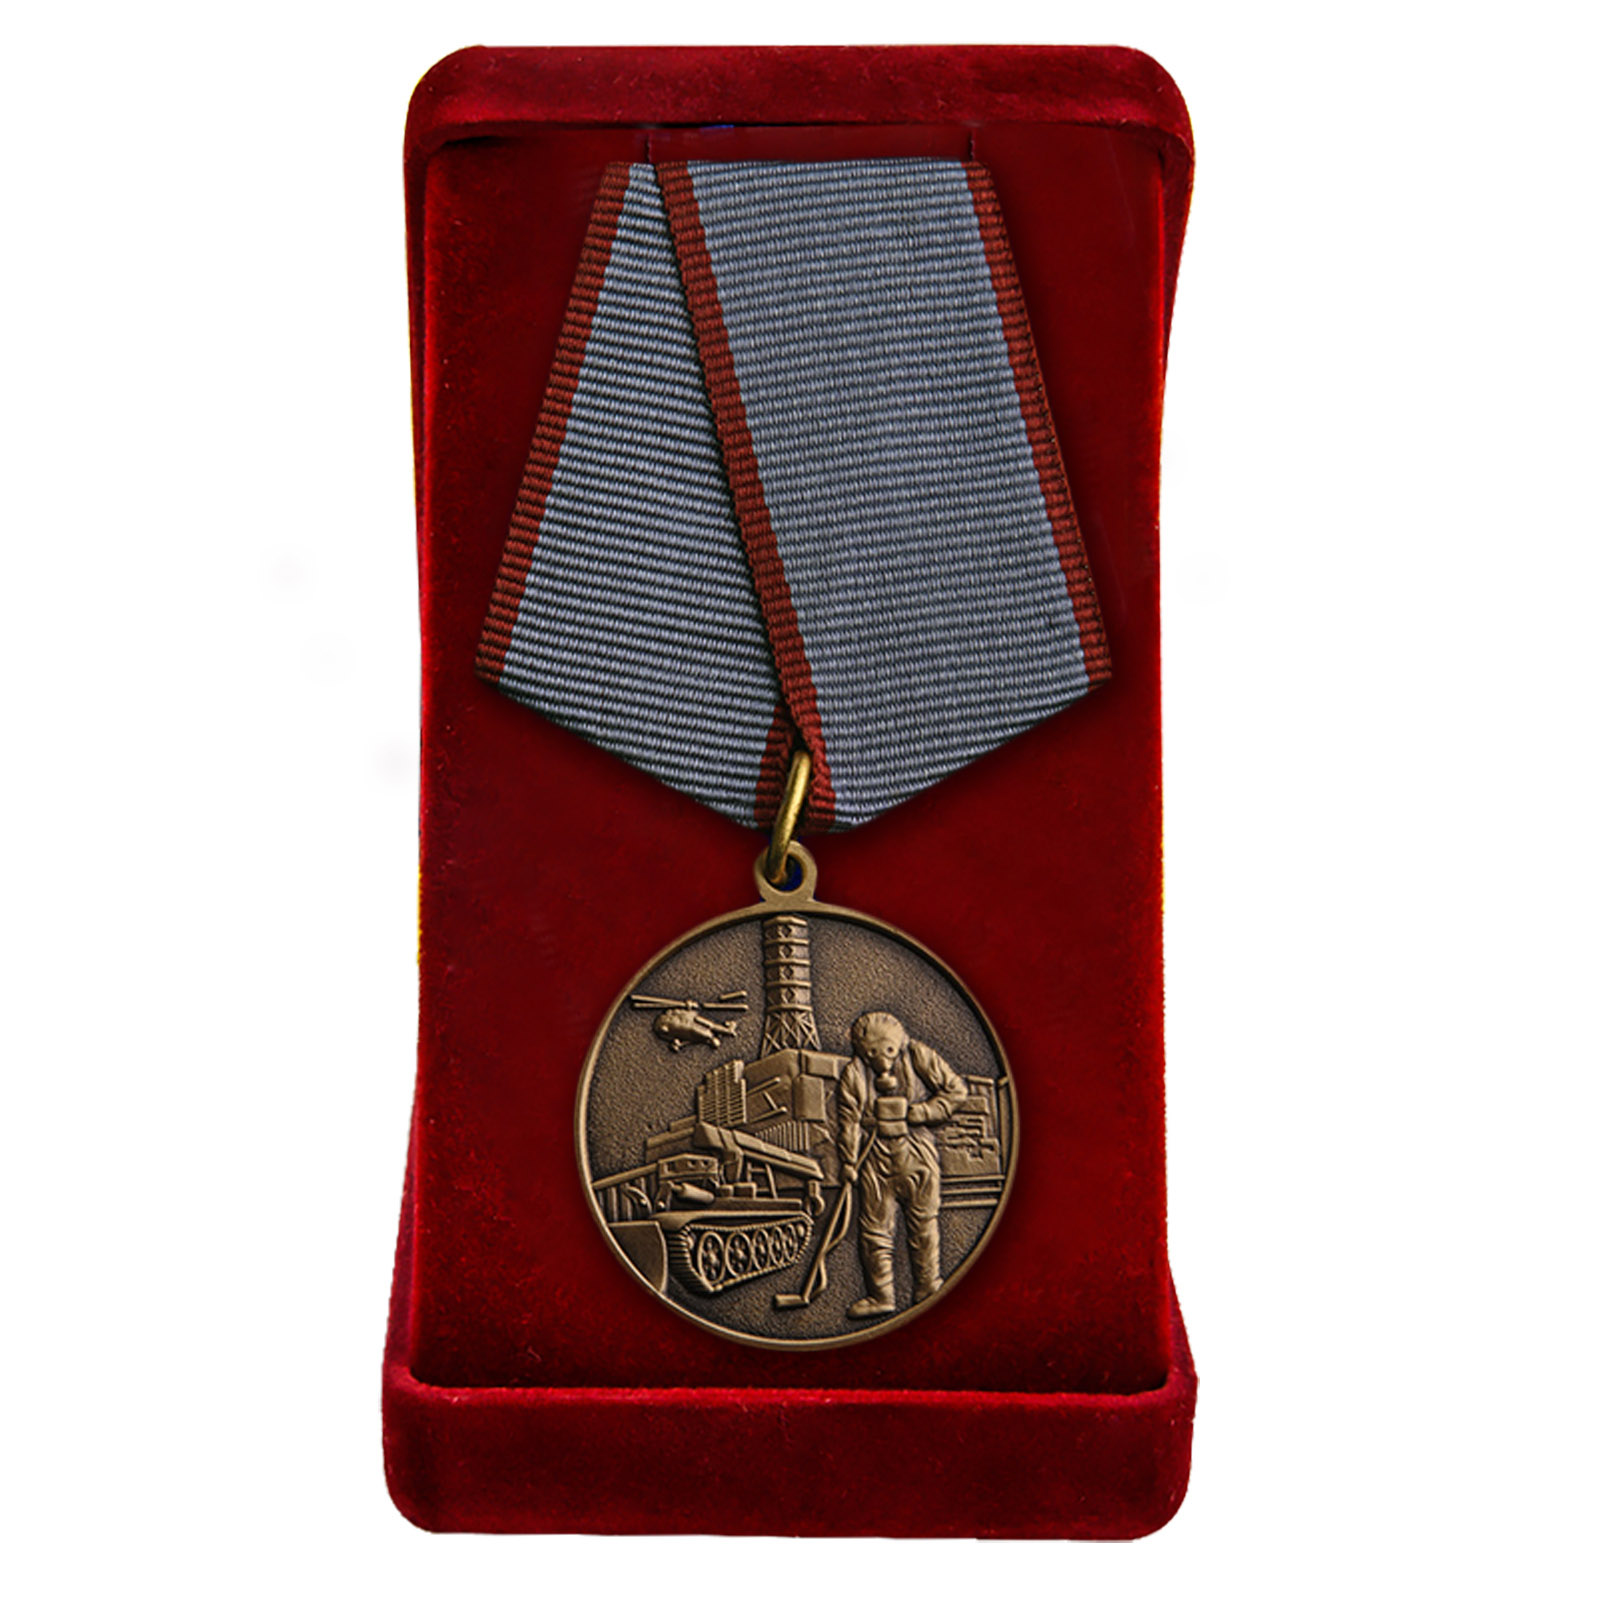 Награда общественной организации. Медаль МСОО ВКБ. Медаль ликвидатора. Медали общественных организаций. Общественные ордена.